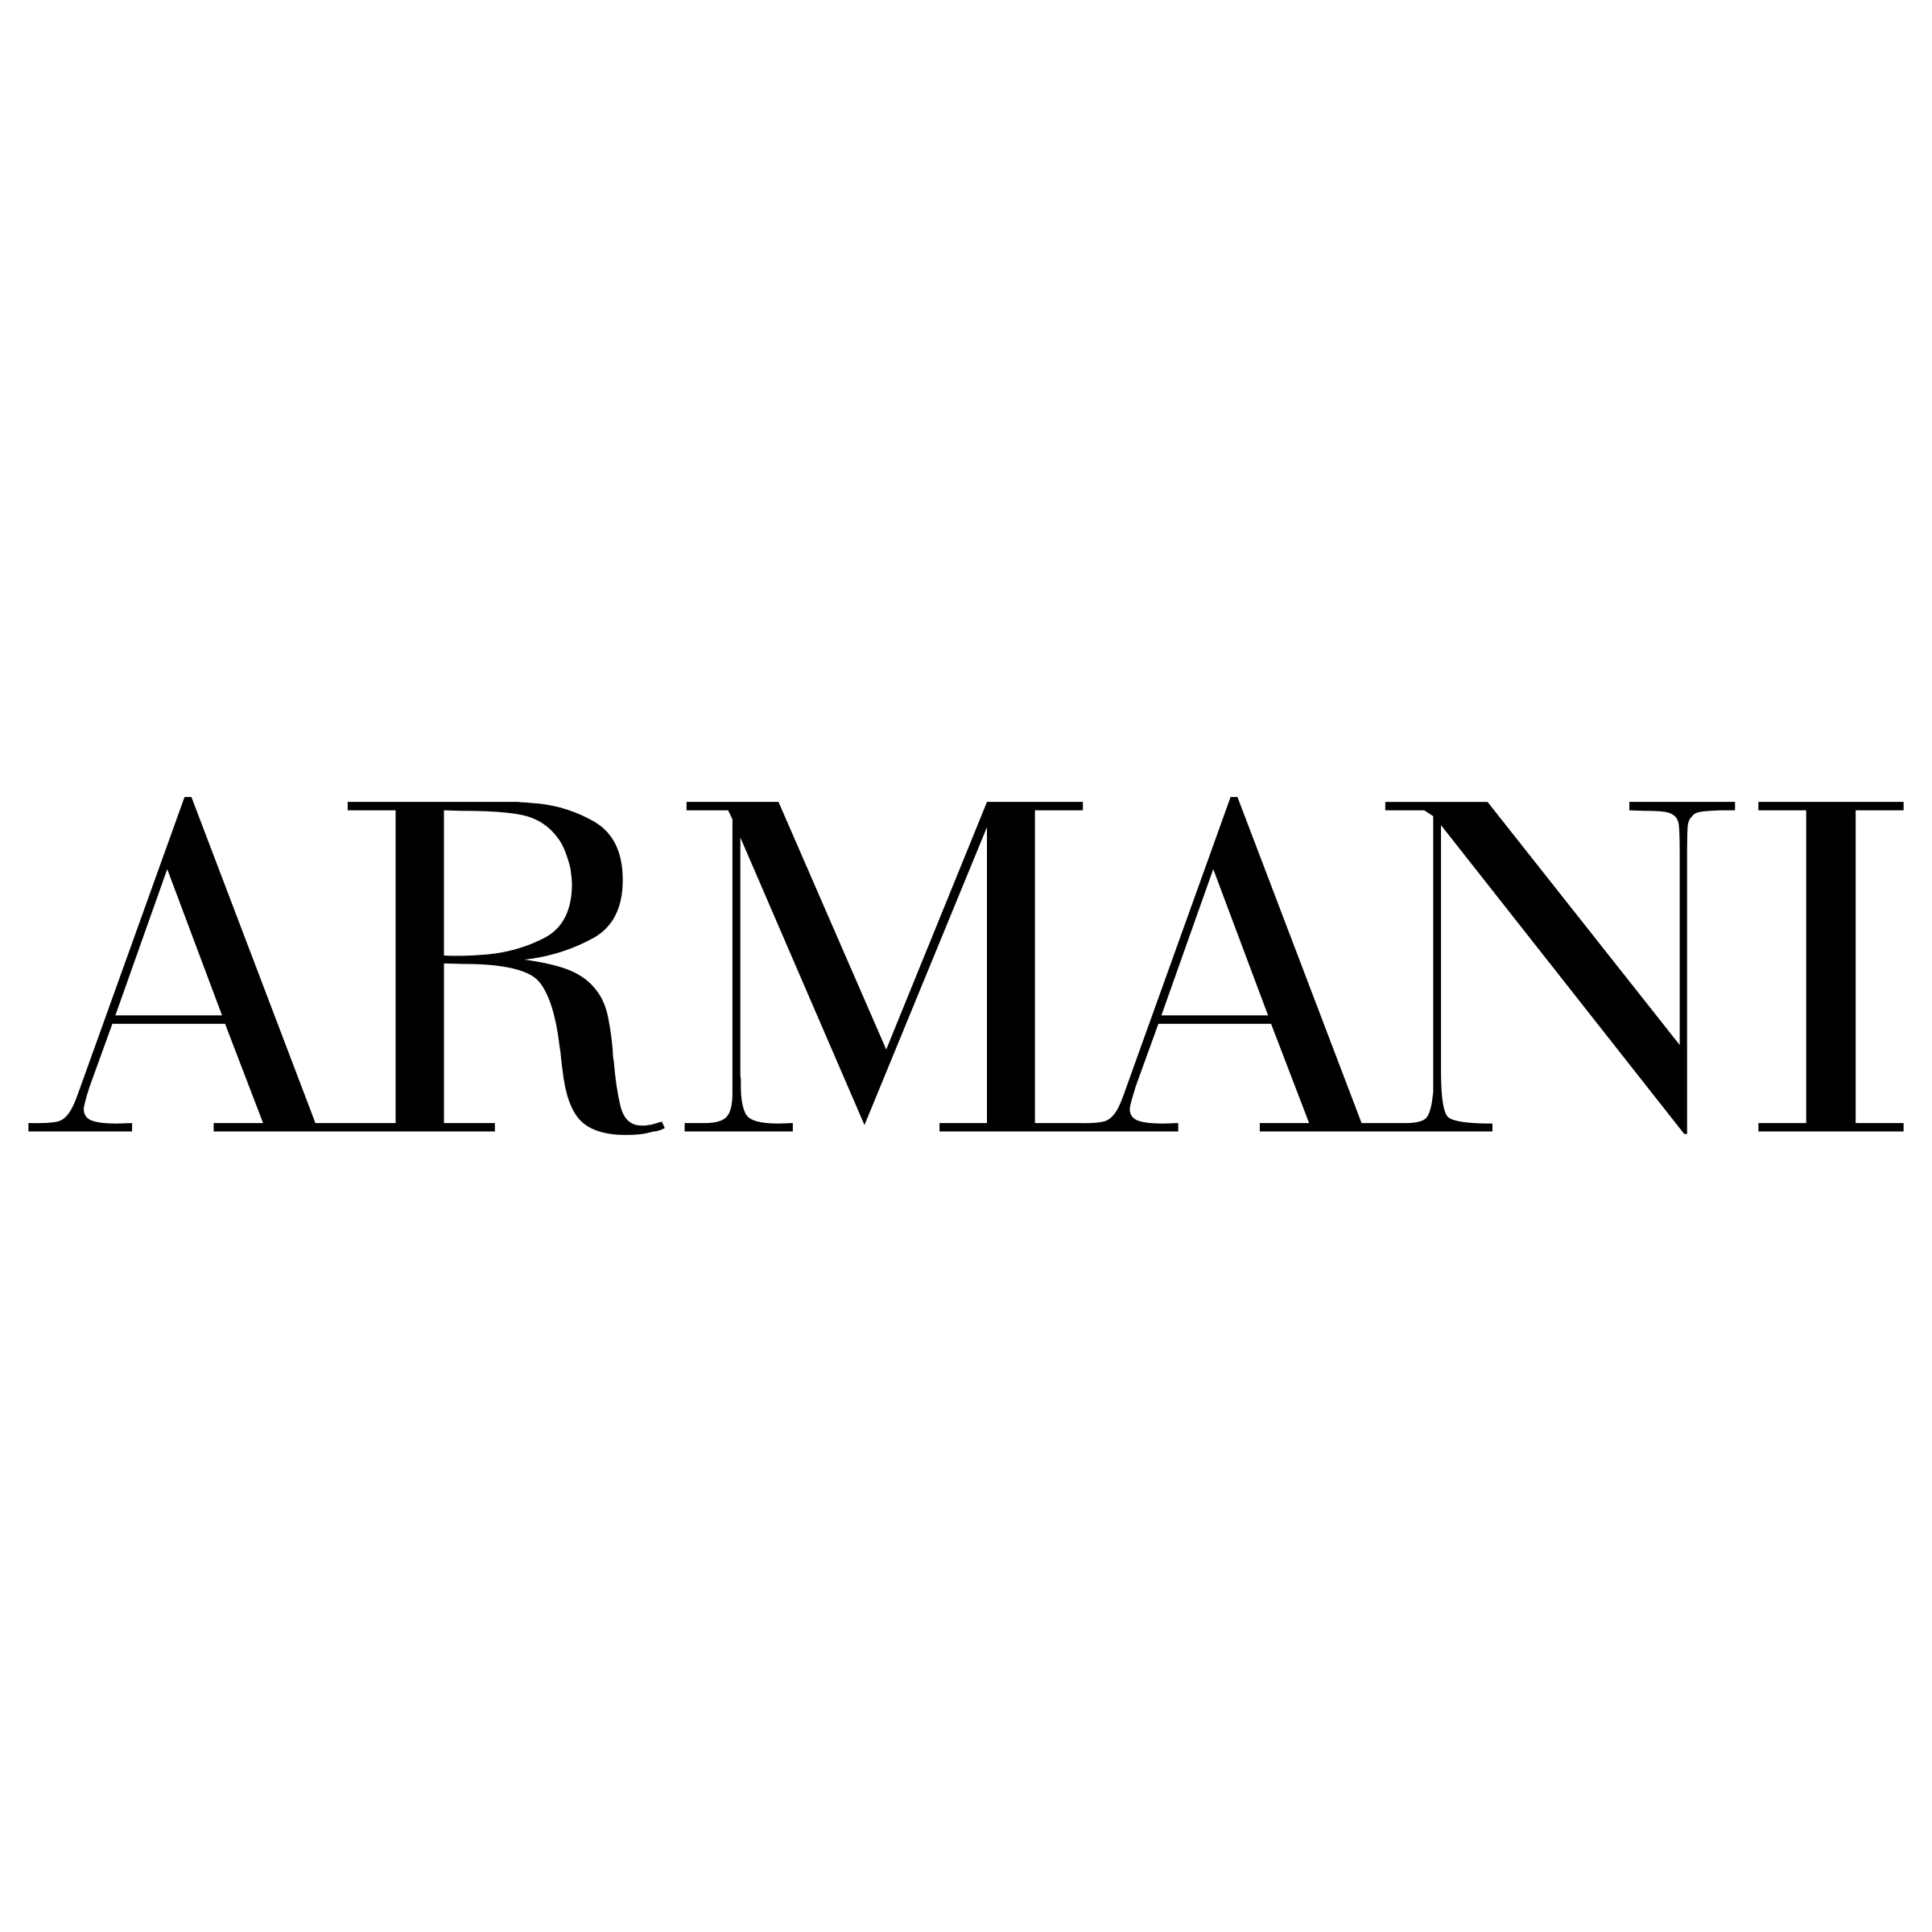 Giorgio Armani Logo Transparent Images